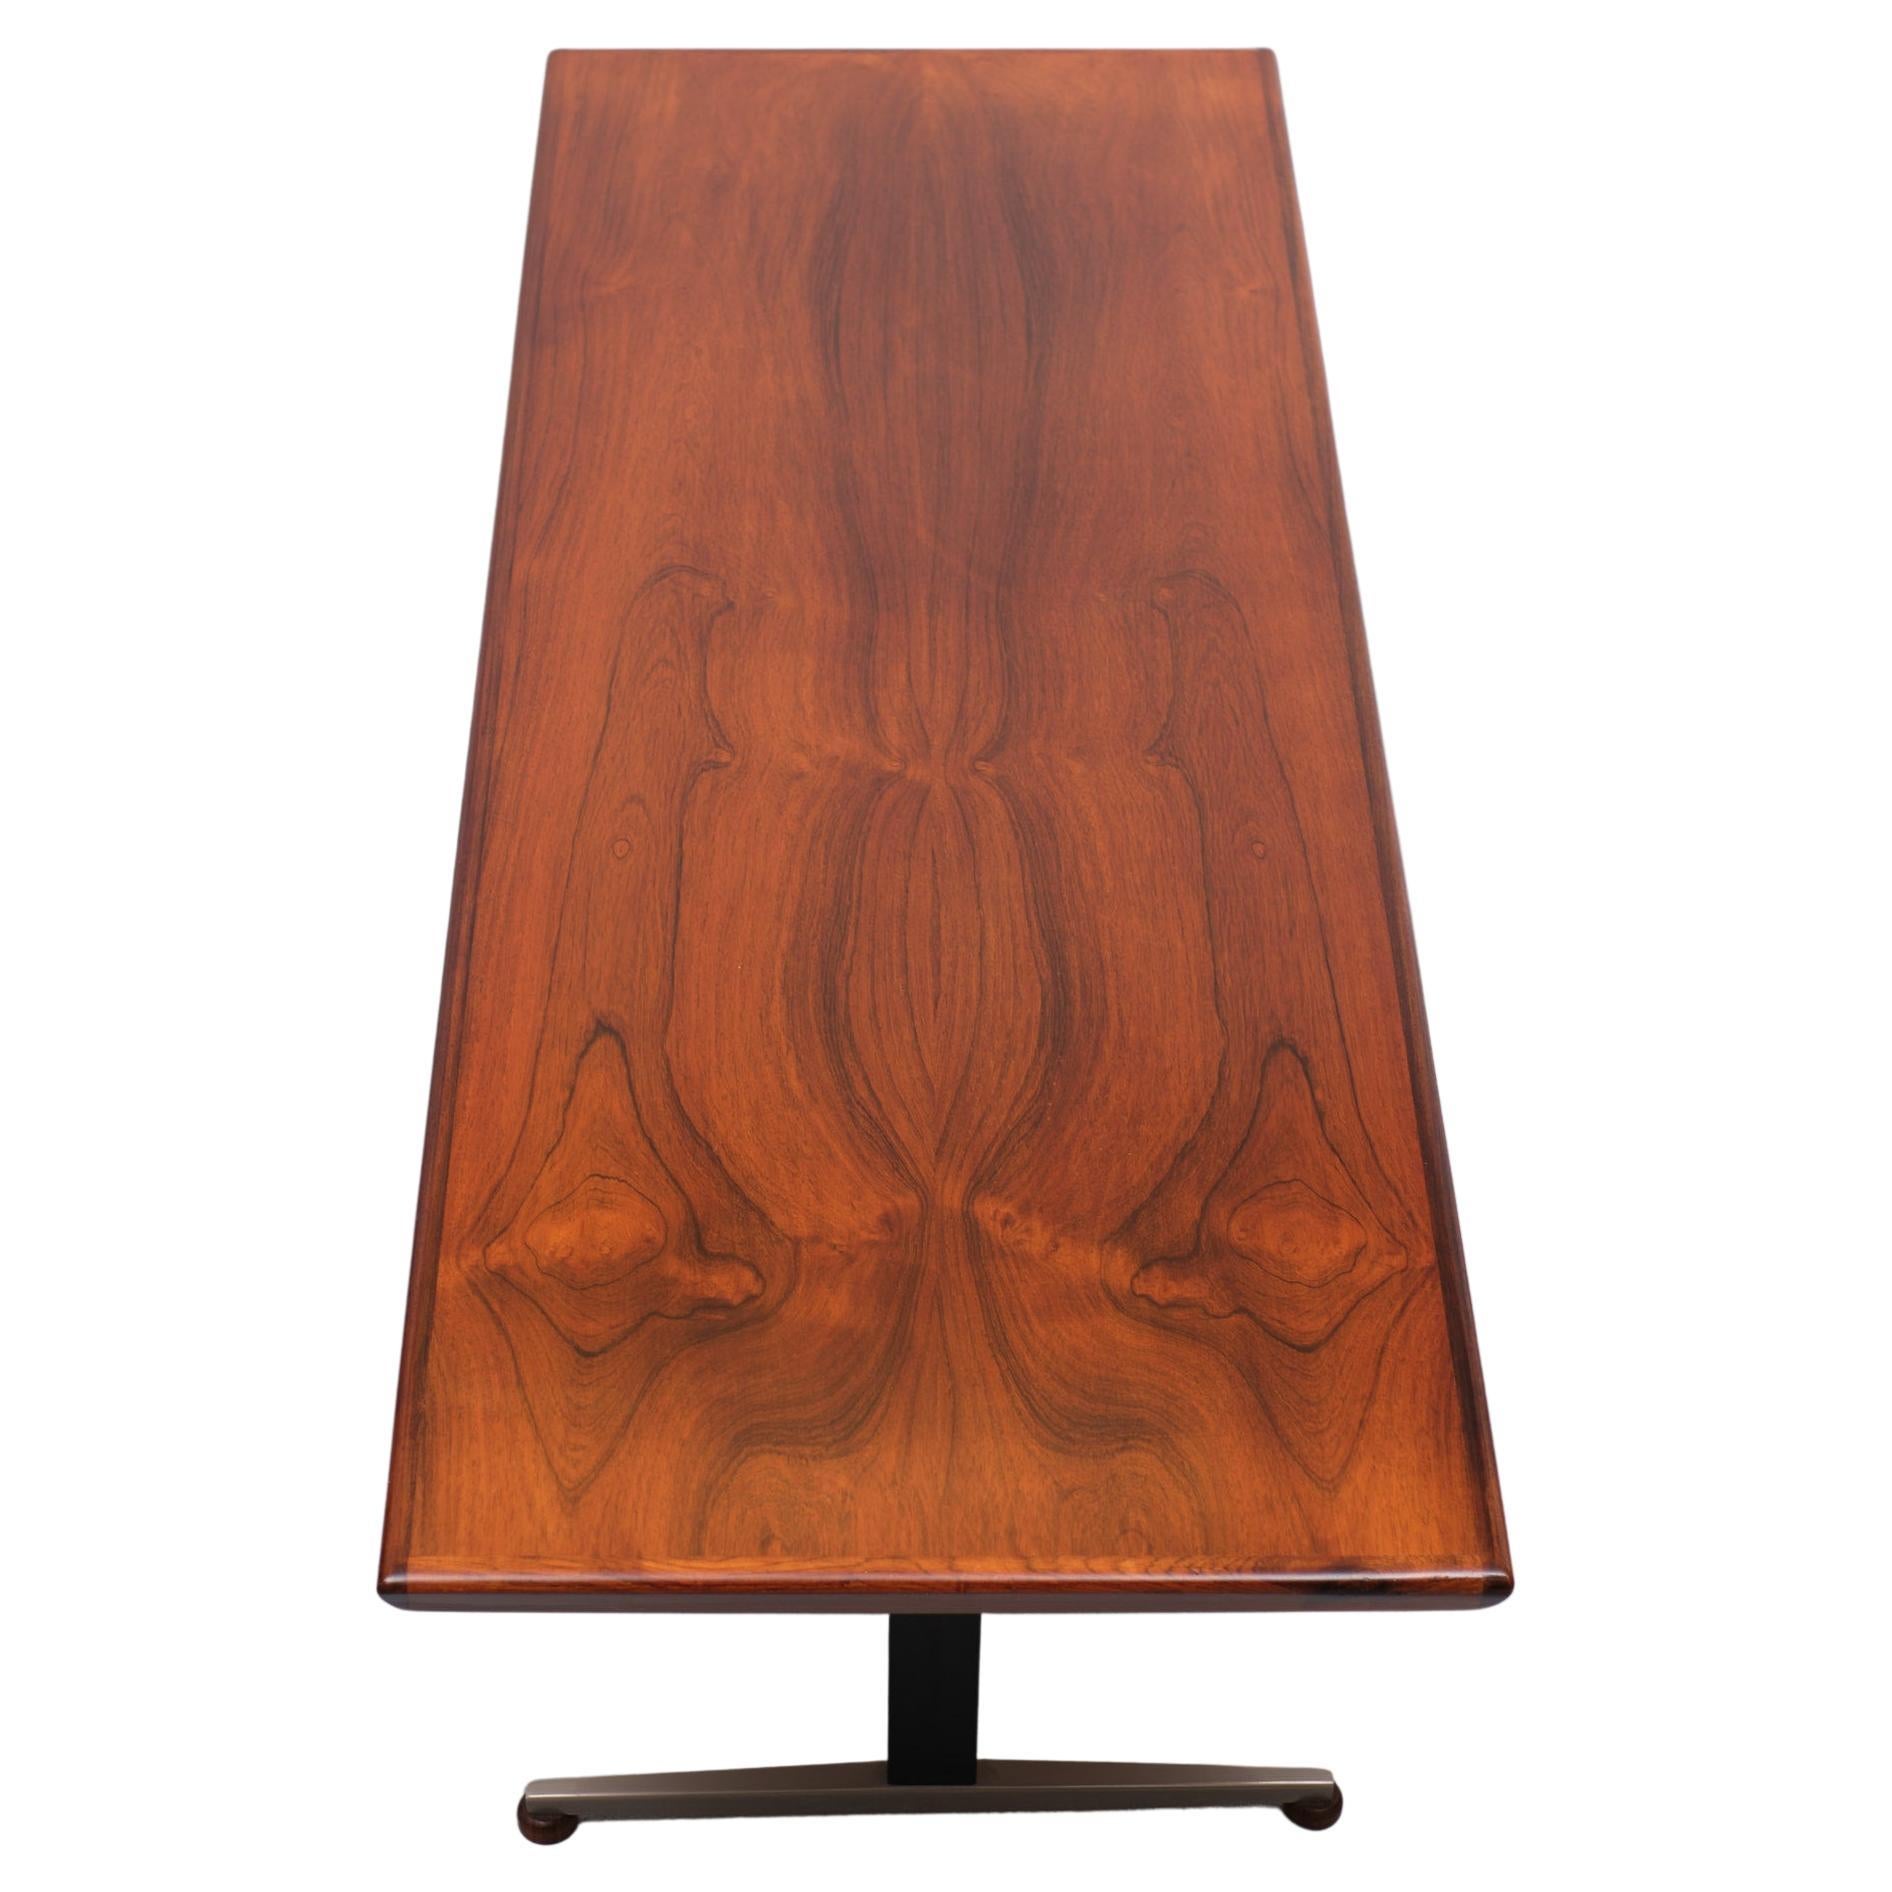 Superbe table basse en bois de rose. Jamais vu une table basse après plus de 50 ans 
et qui a l'air si bien. Jolis détails, regardez les orteils en bois. Beau grain sur 
le palissandre. Très bon état.